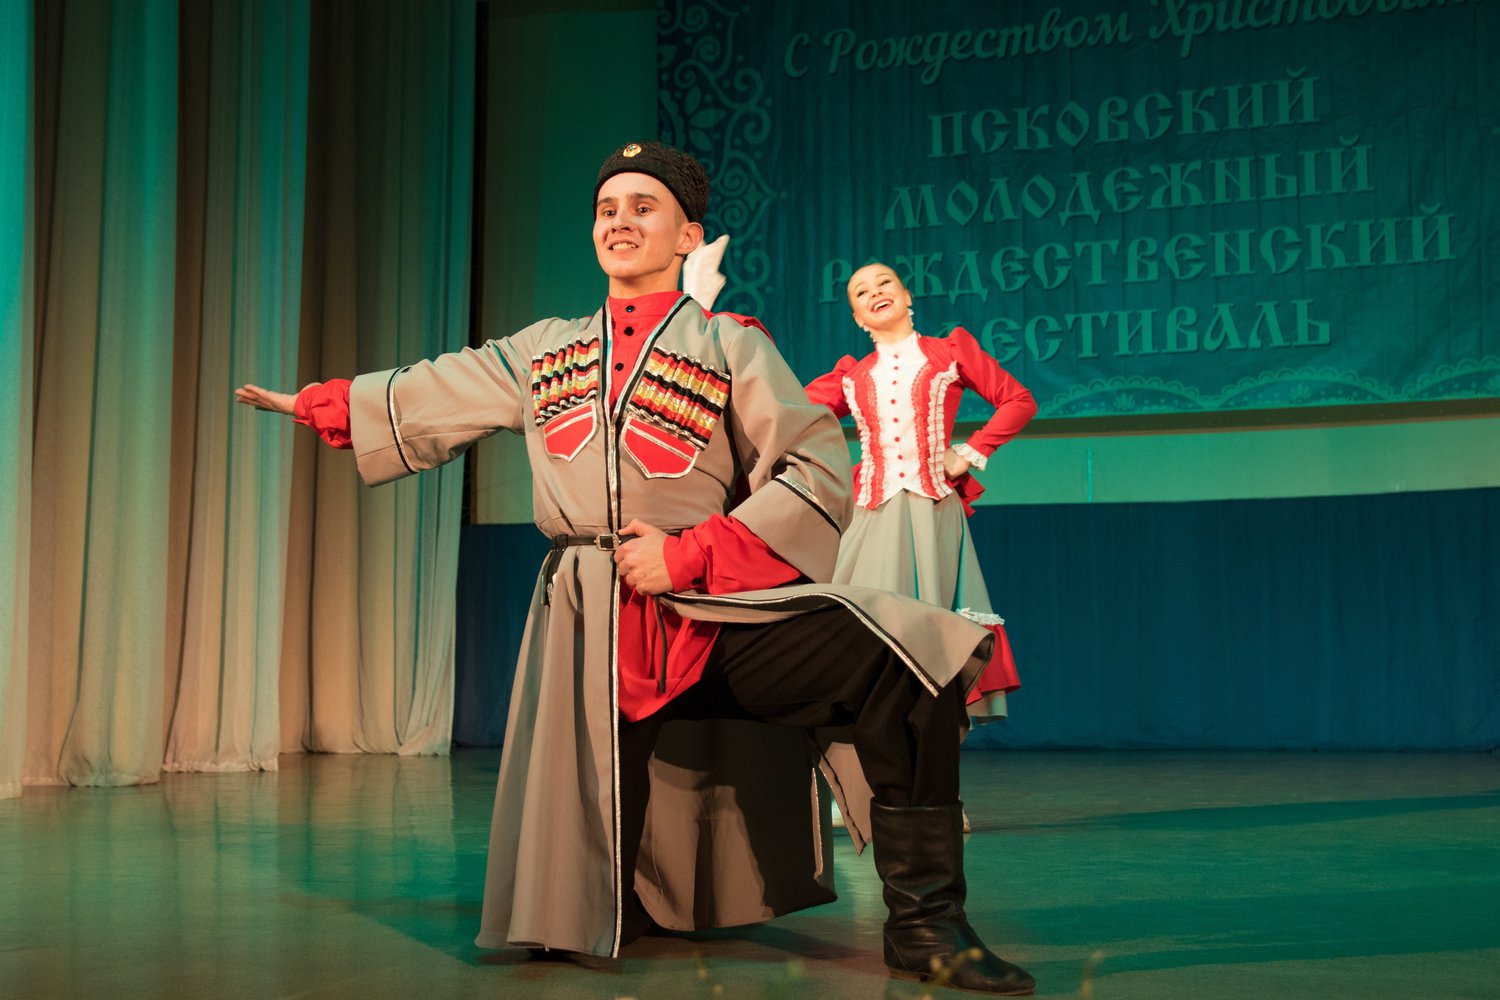 10 декабря в 18:00 на сцене Дома офицеров состоится отборочный этап Рождественского молодежного фестиваля искусств.